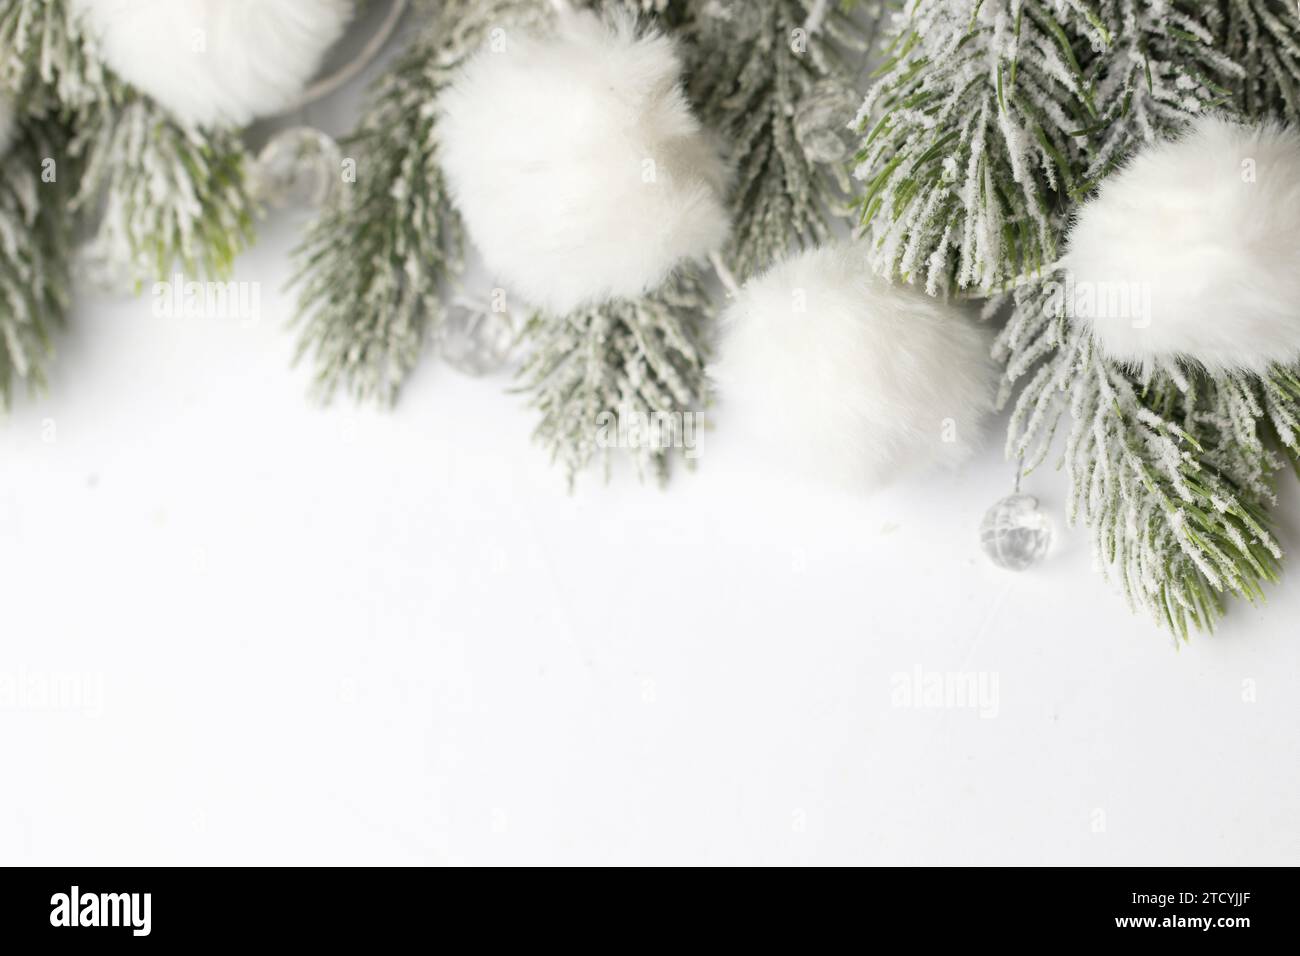 Weihnachtsdekoration grüne Weihnachtsbaumzweige und weiße Schneegirlande Grenze auf weißem Hintergrund. Abstraktes Weihnachtsfest mit kreativem, saisonalem Flatlay-Modell Stockfoto